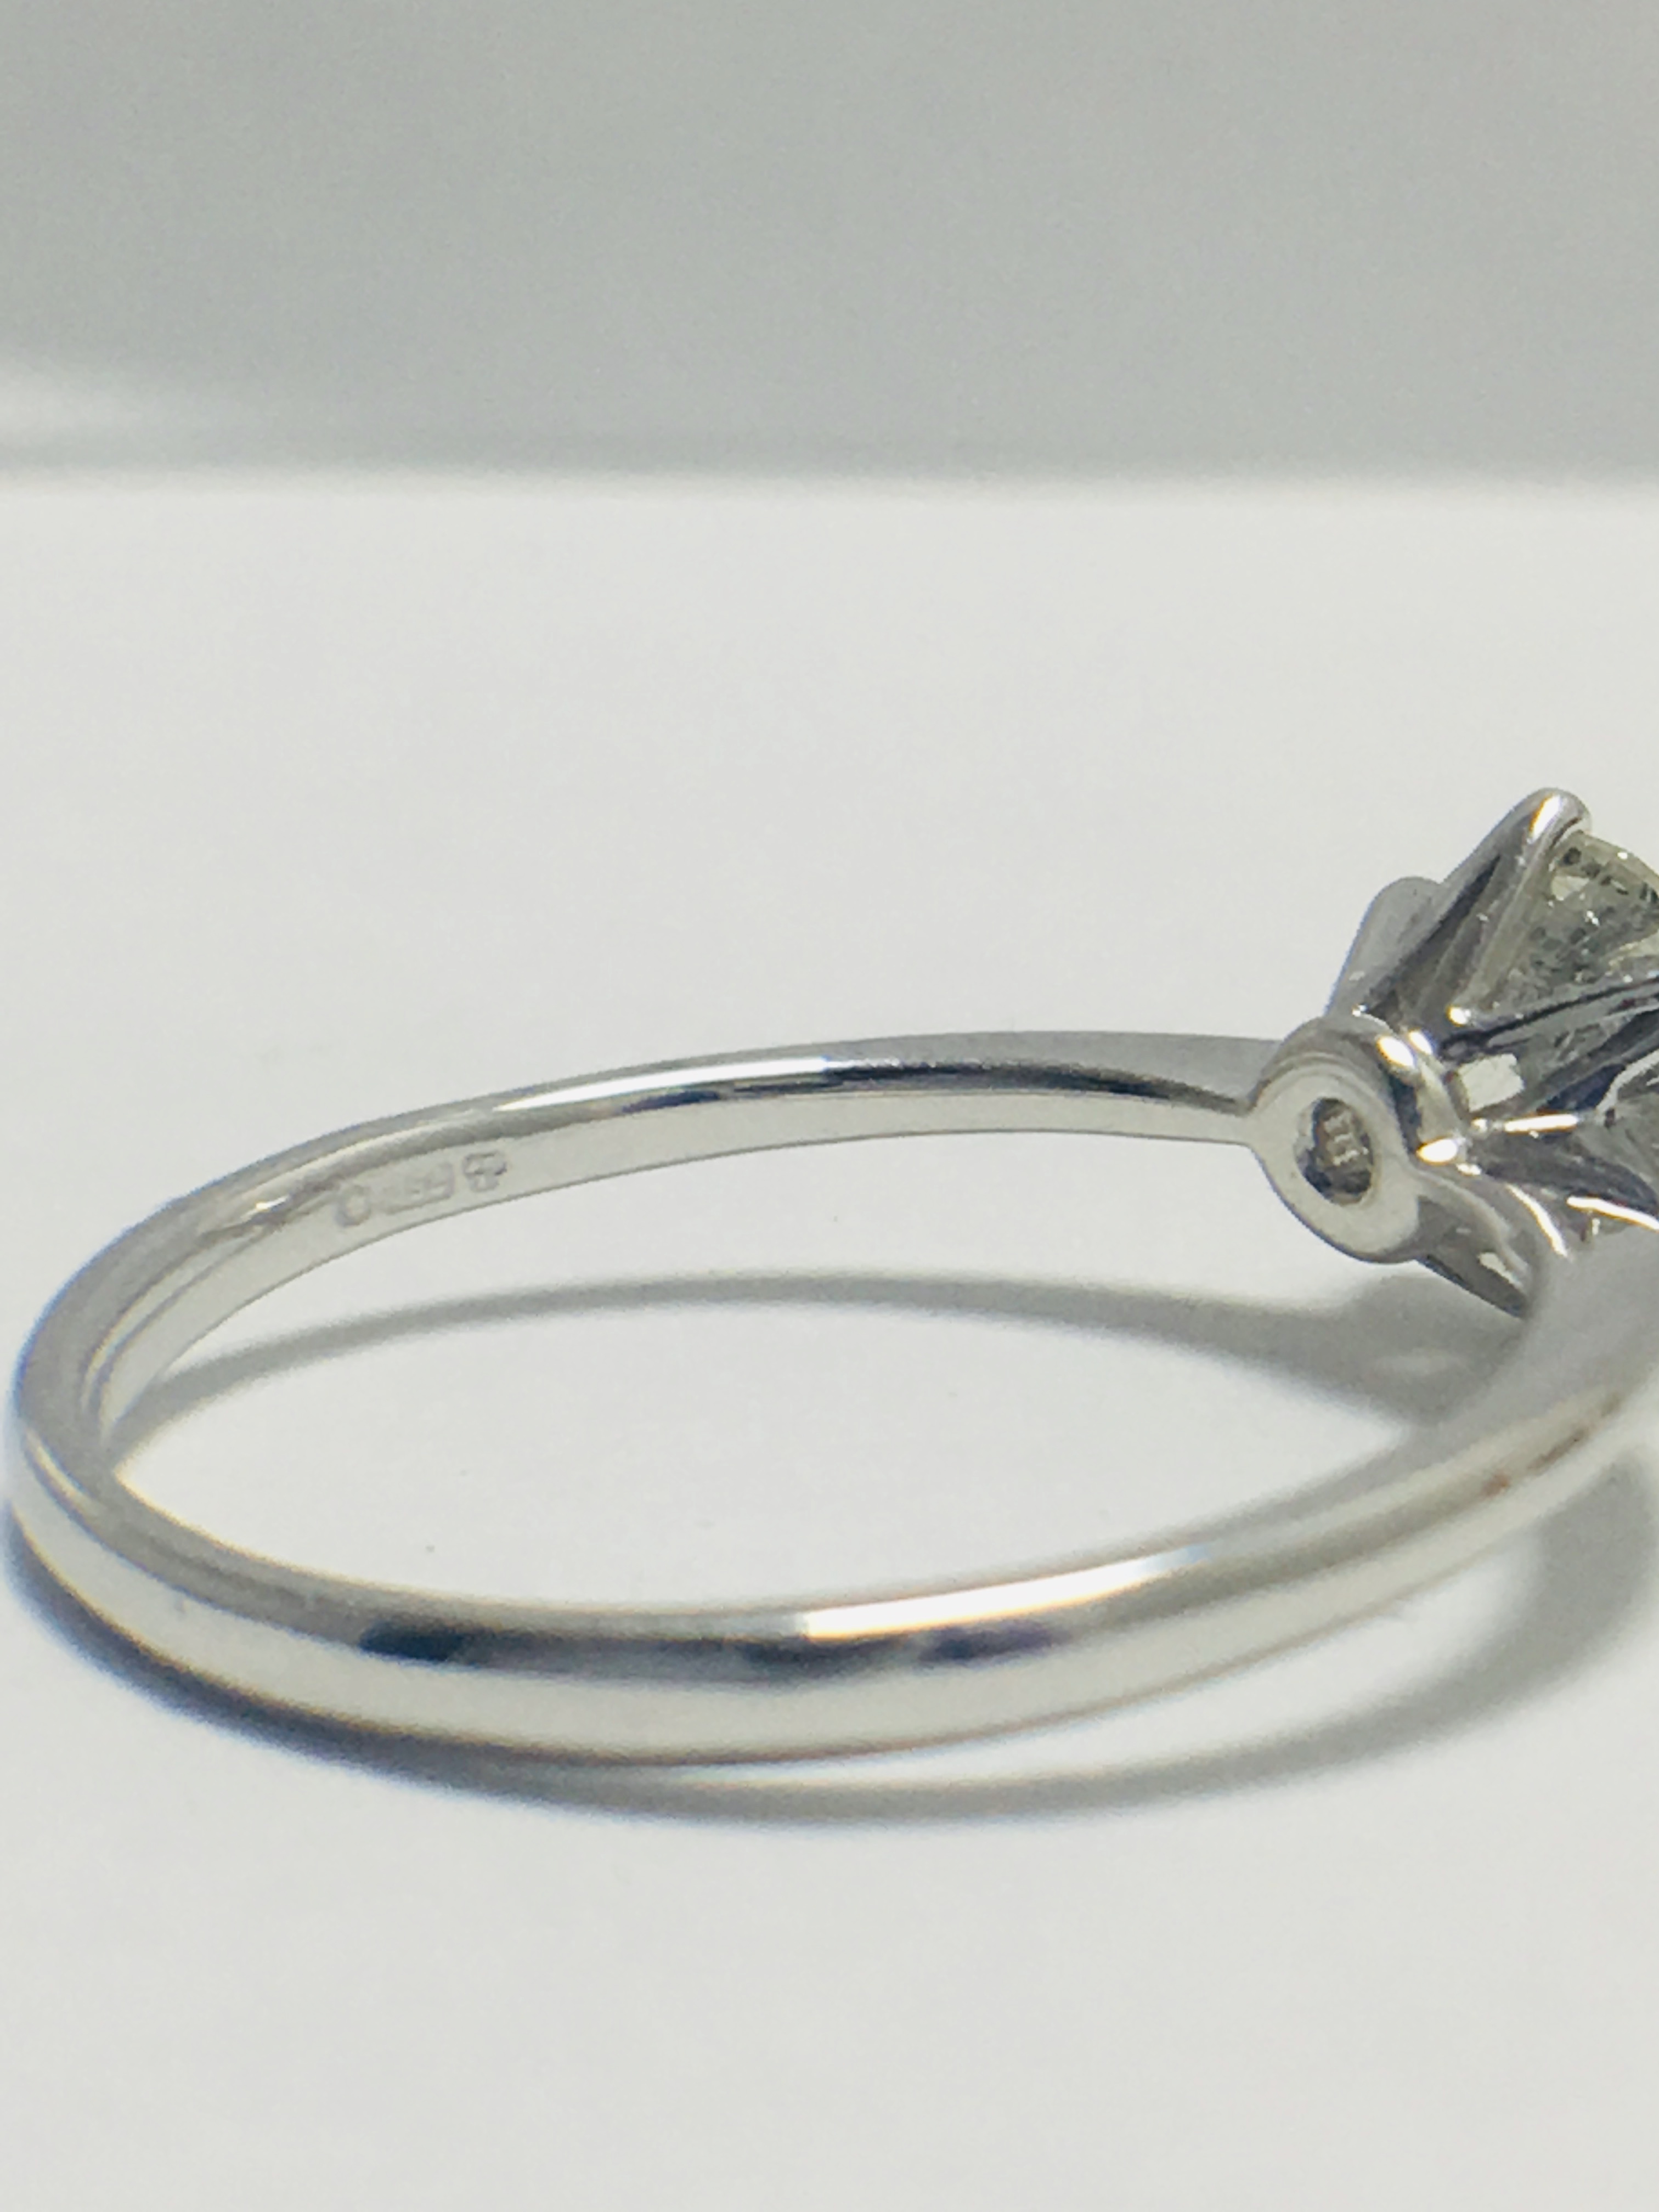 1ct platinum Diamond solitaire ring - Image 6 of 10